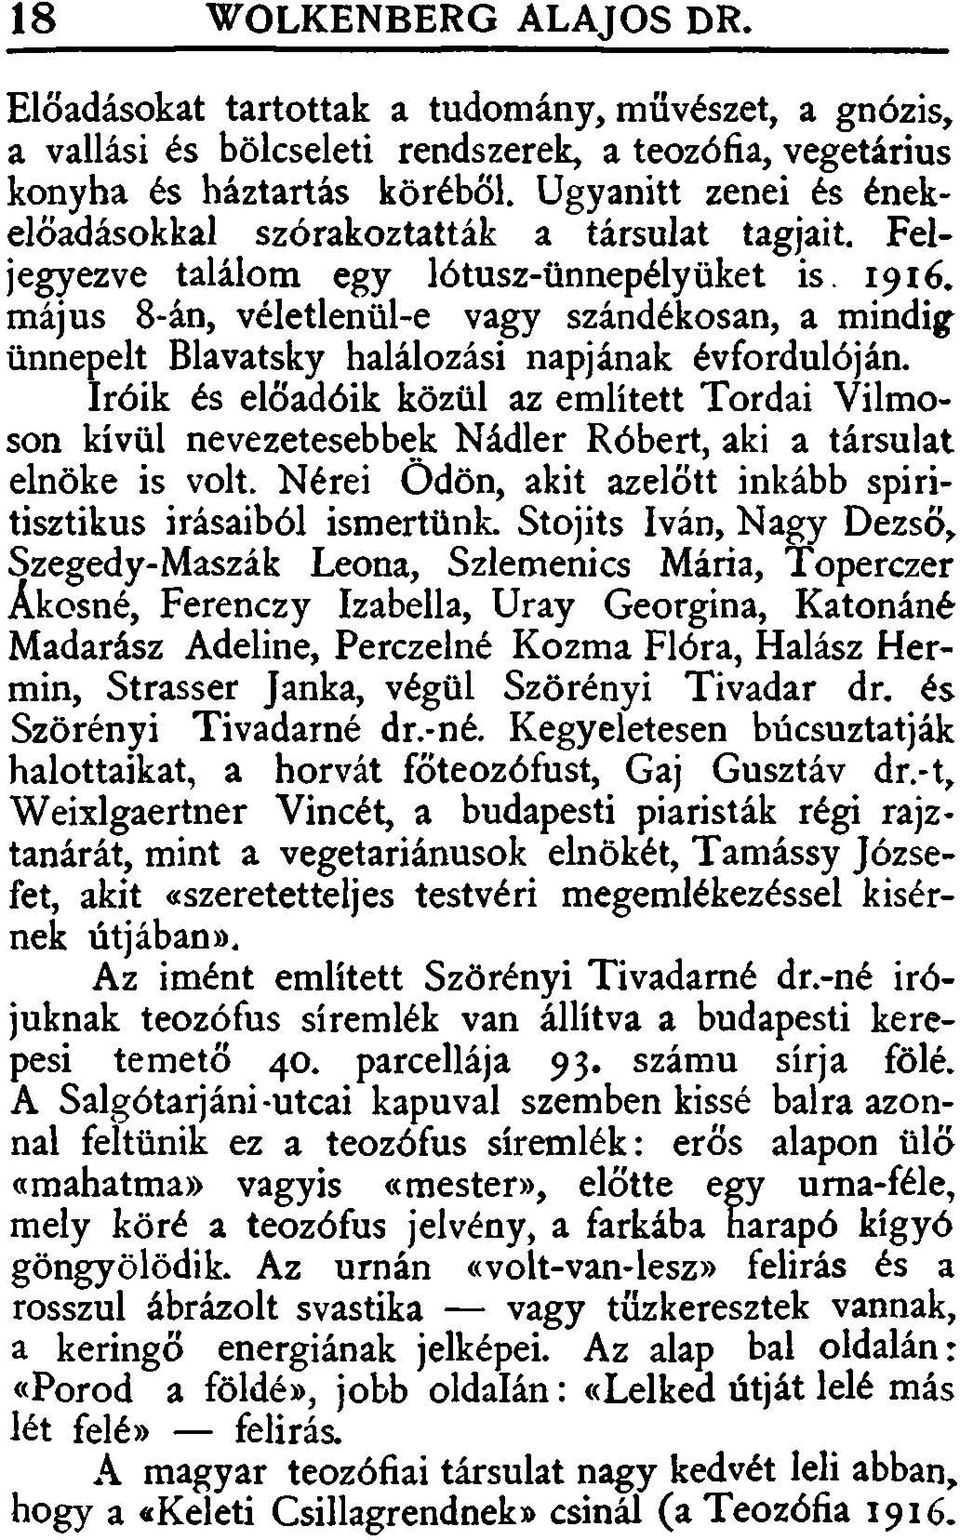 május 8-án, véletlenül-e vagy szándékosan, a mindig ünnepelt Blavatsky halálozási napjának évfordulóján.